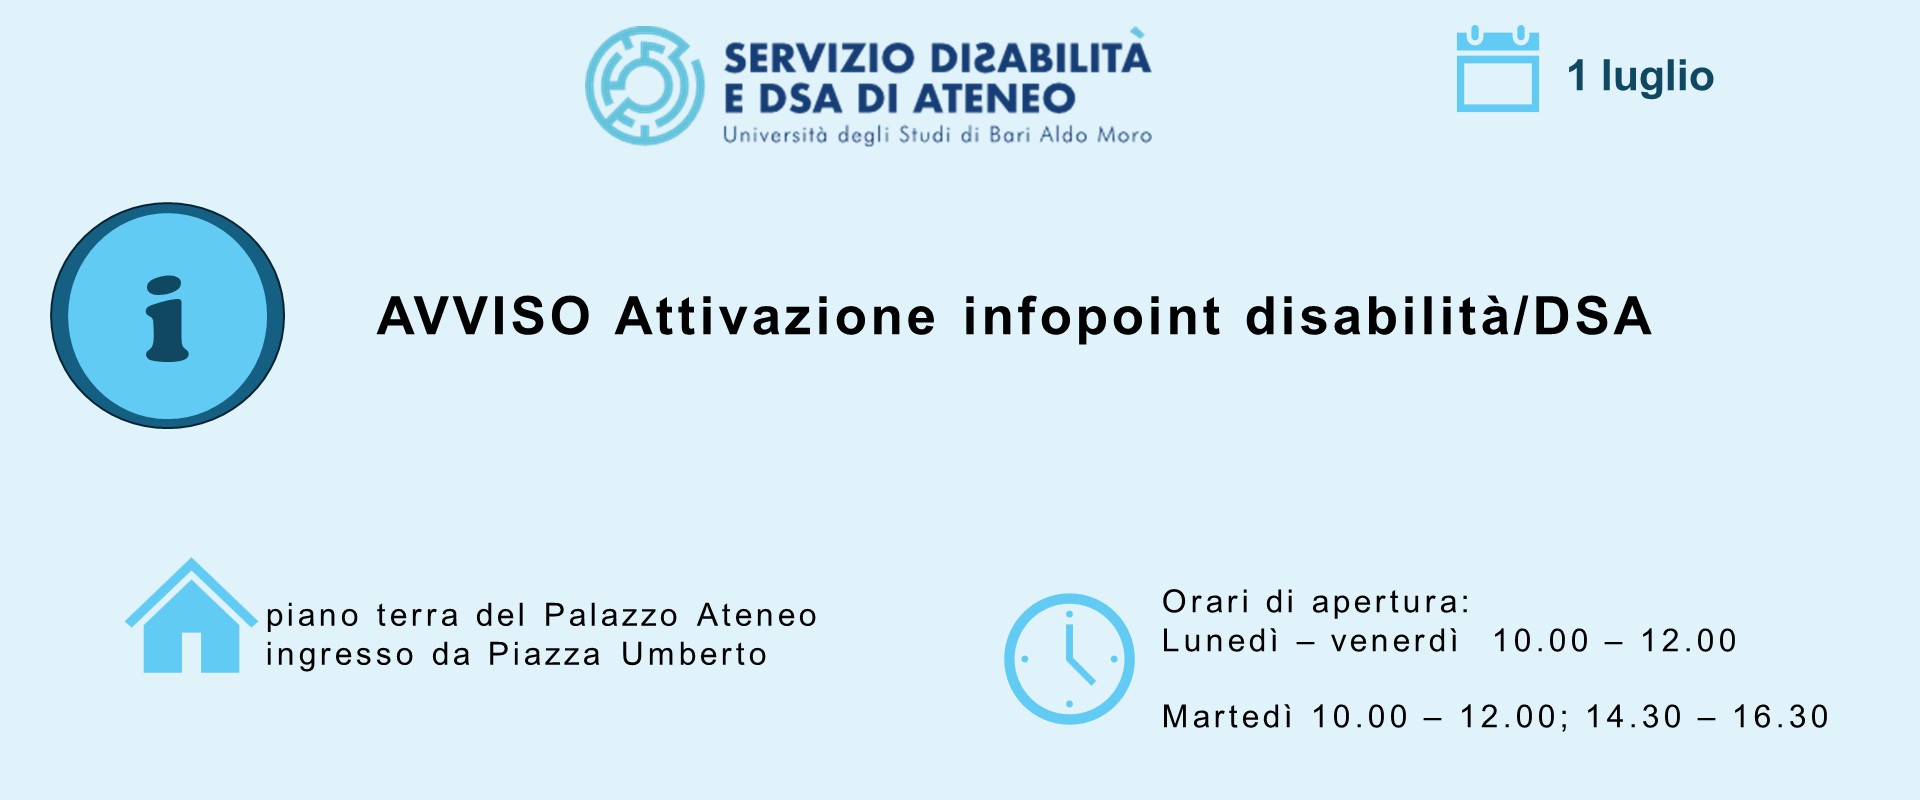 Attivazione infopoint disabilità/DSA